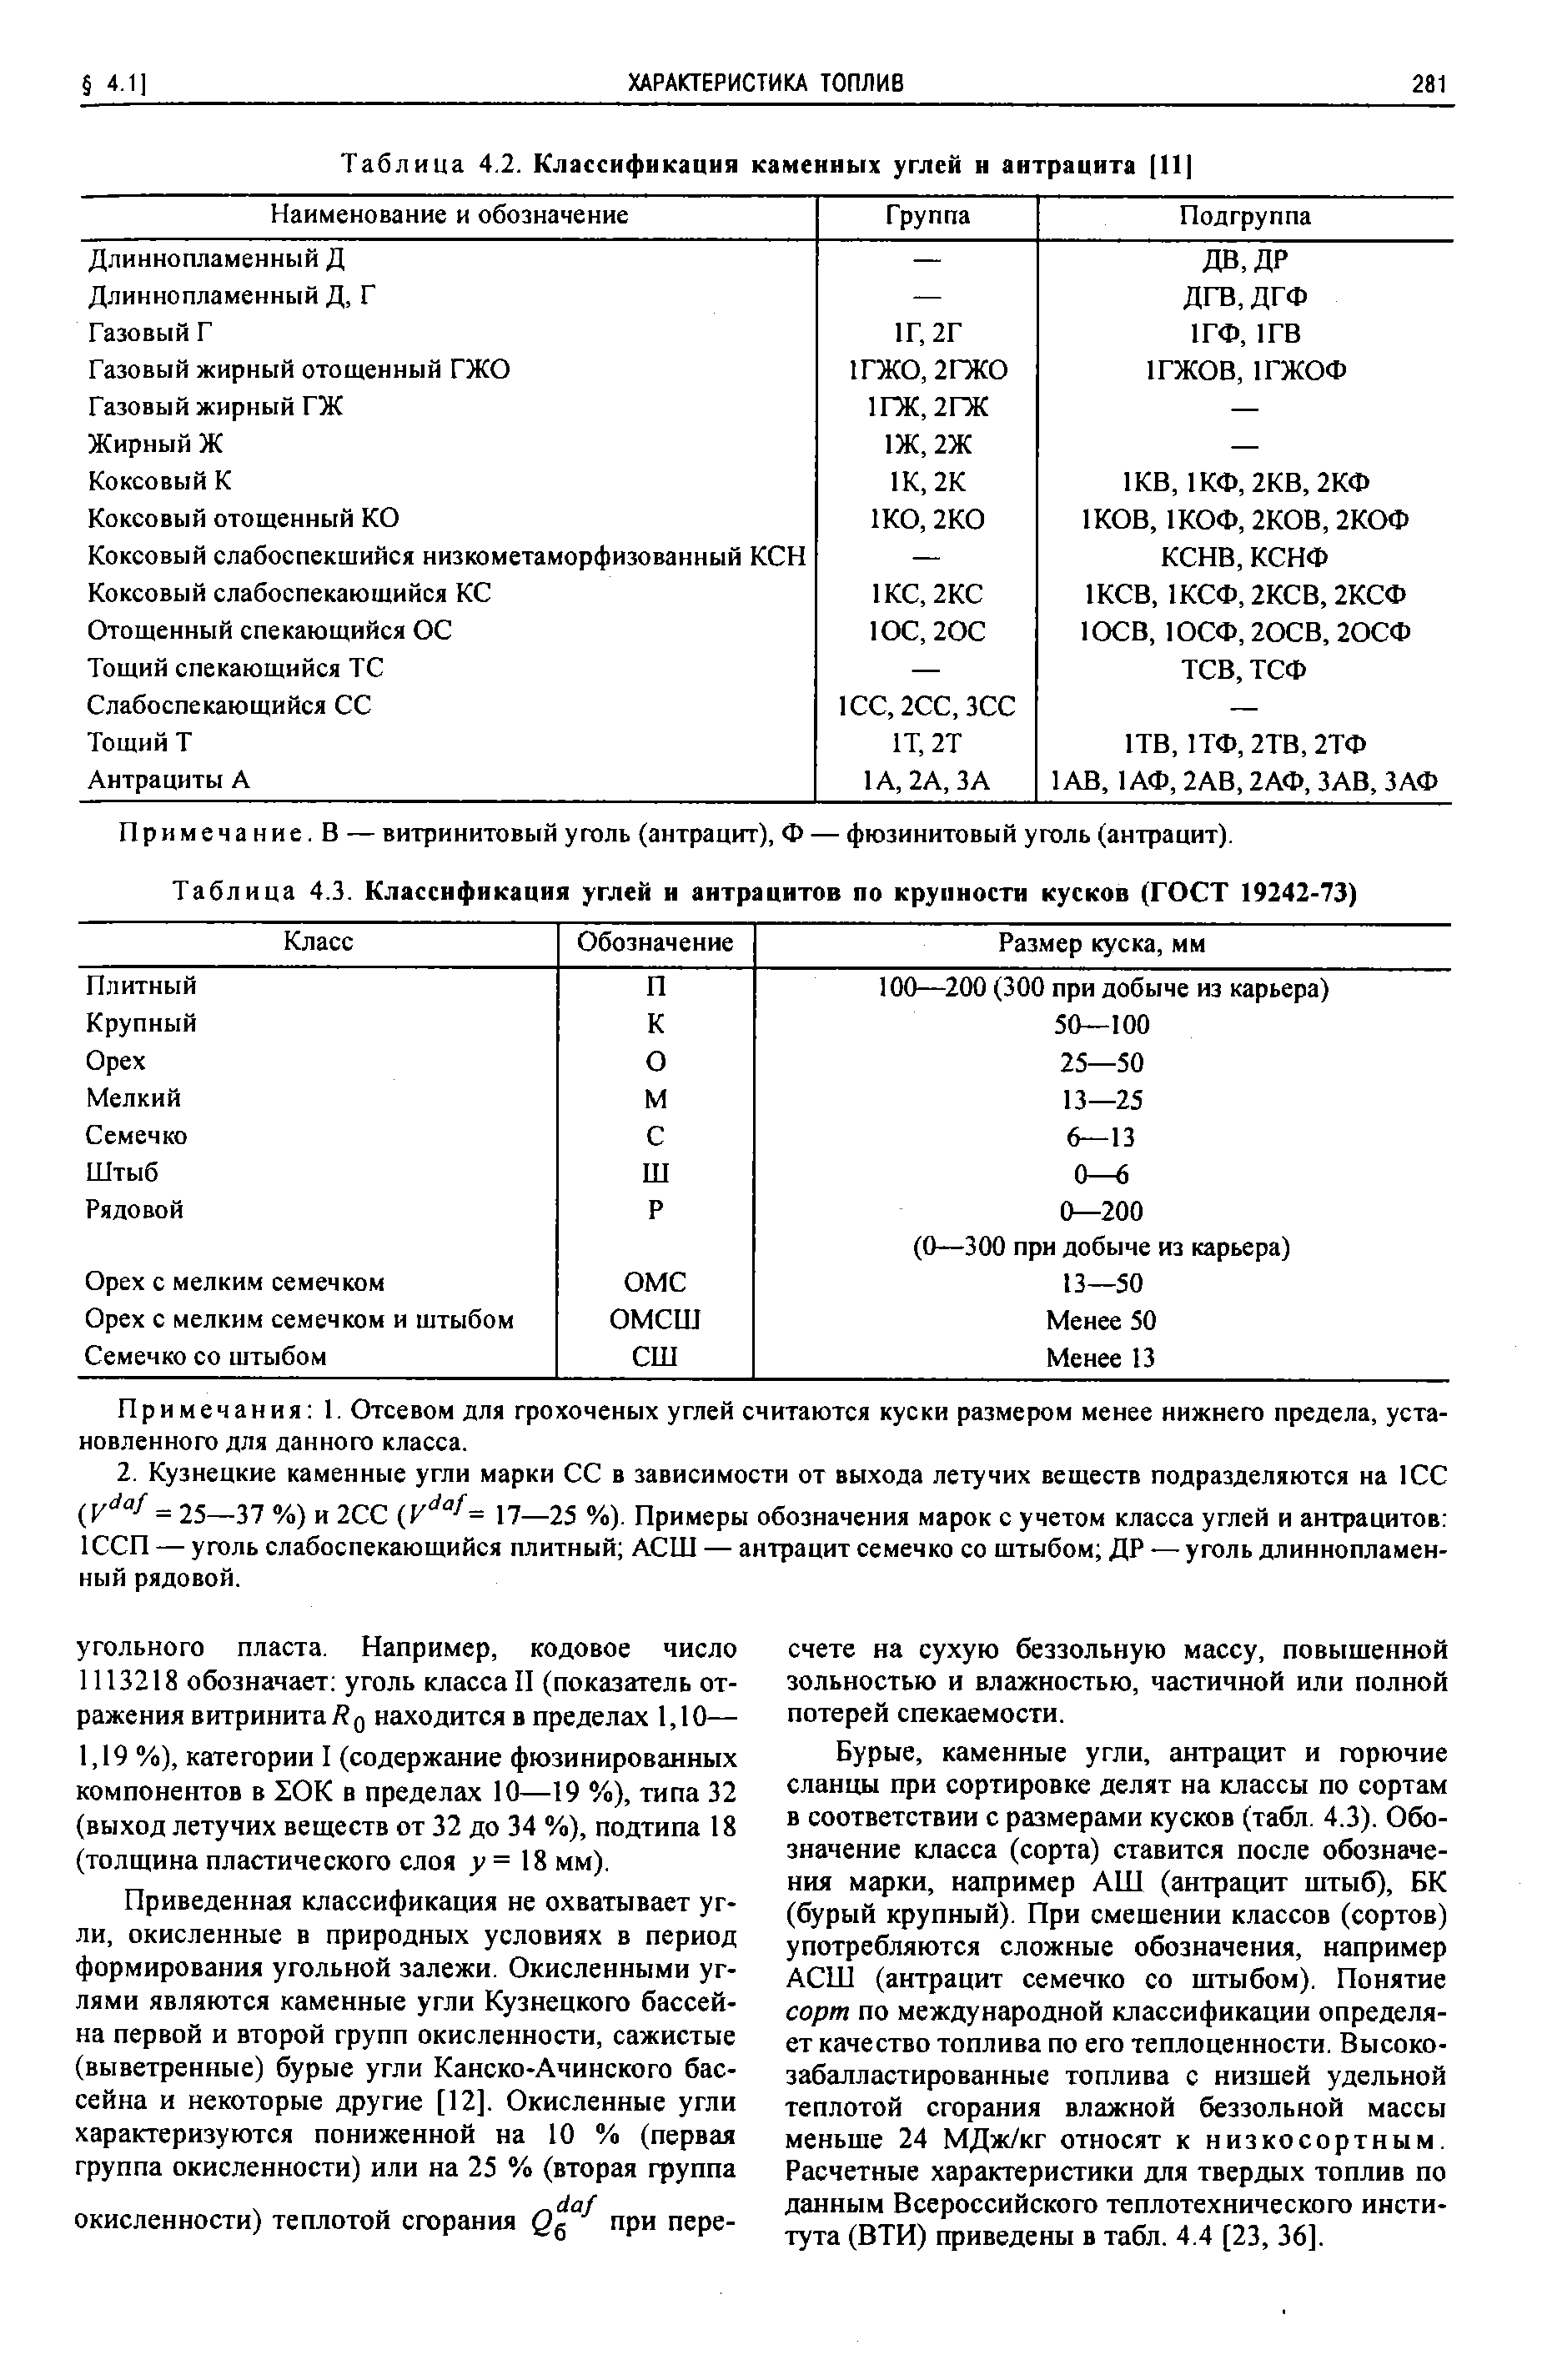 Таблица 4.3. Классификация углей и антрацитов по крупности кусков (ГОСТ 19242-73)
